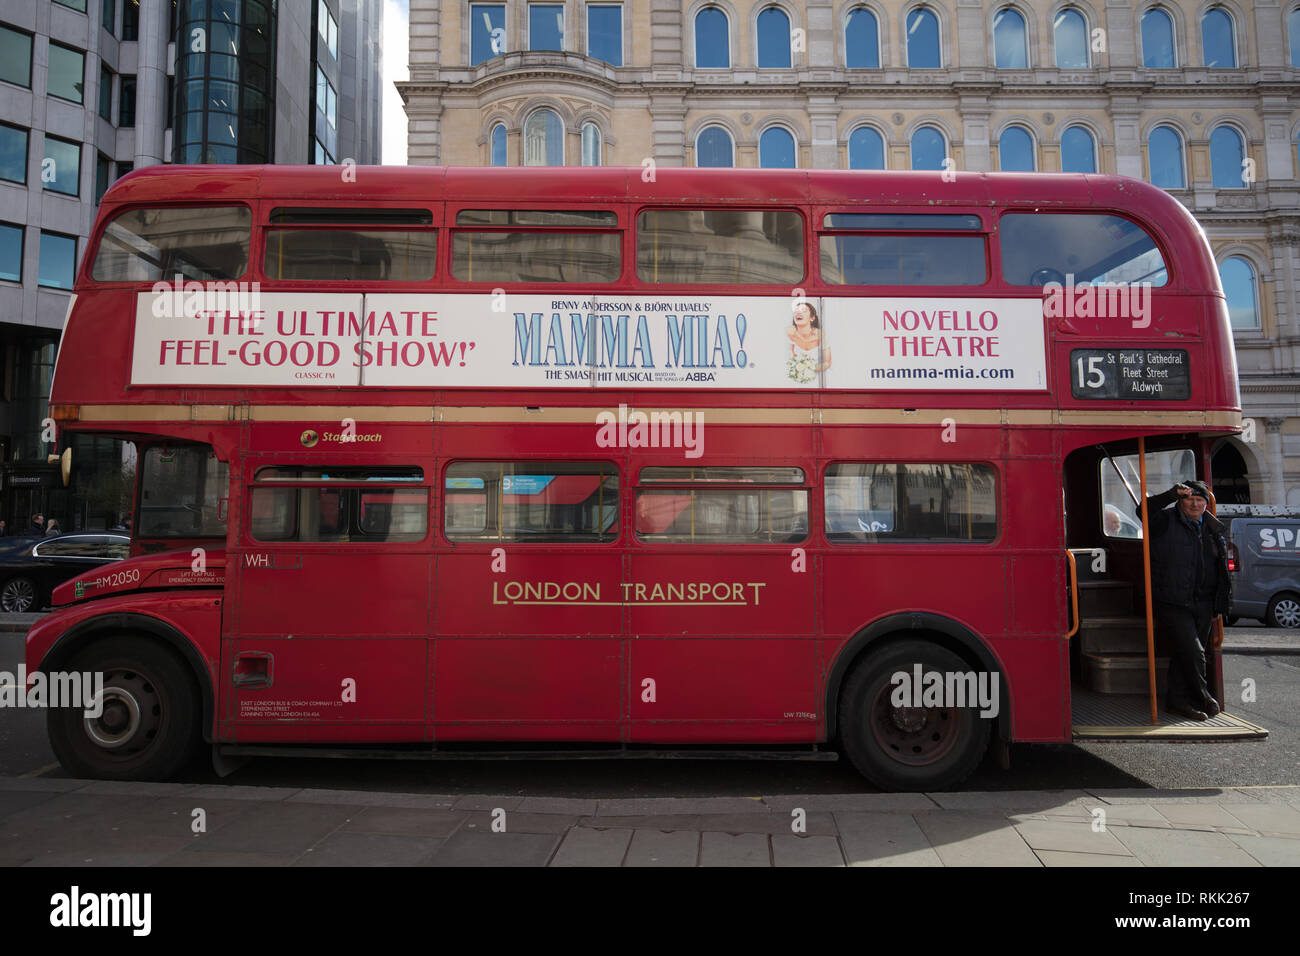 Londres, Royaume-Uni. 11 février 2019. Routemaster bus rouge du patrimoine avec orchestre, fonctionne encore tous les jours entre Trafalgar Square et la Tour de Londres, jusqu'au 1er mars de cette année, quand le bus ne fonctionne qu'en fin de semaine. Crédit : Joe Keurig / Alamy Live News Banque D'Images